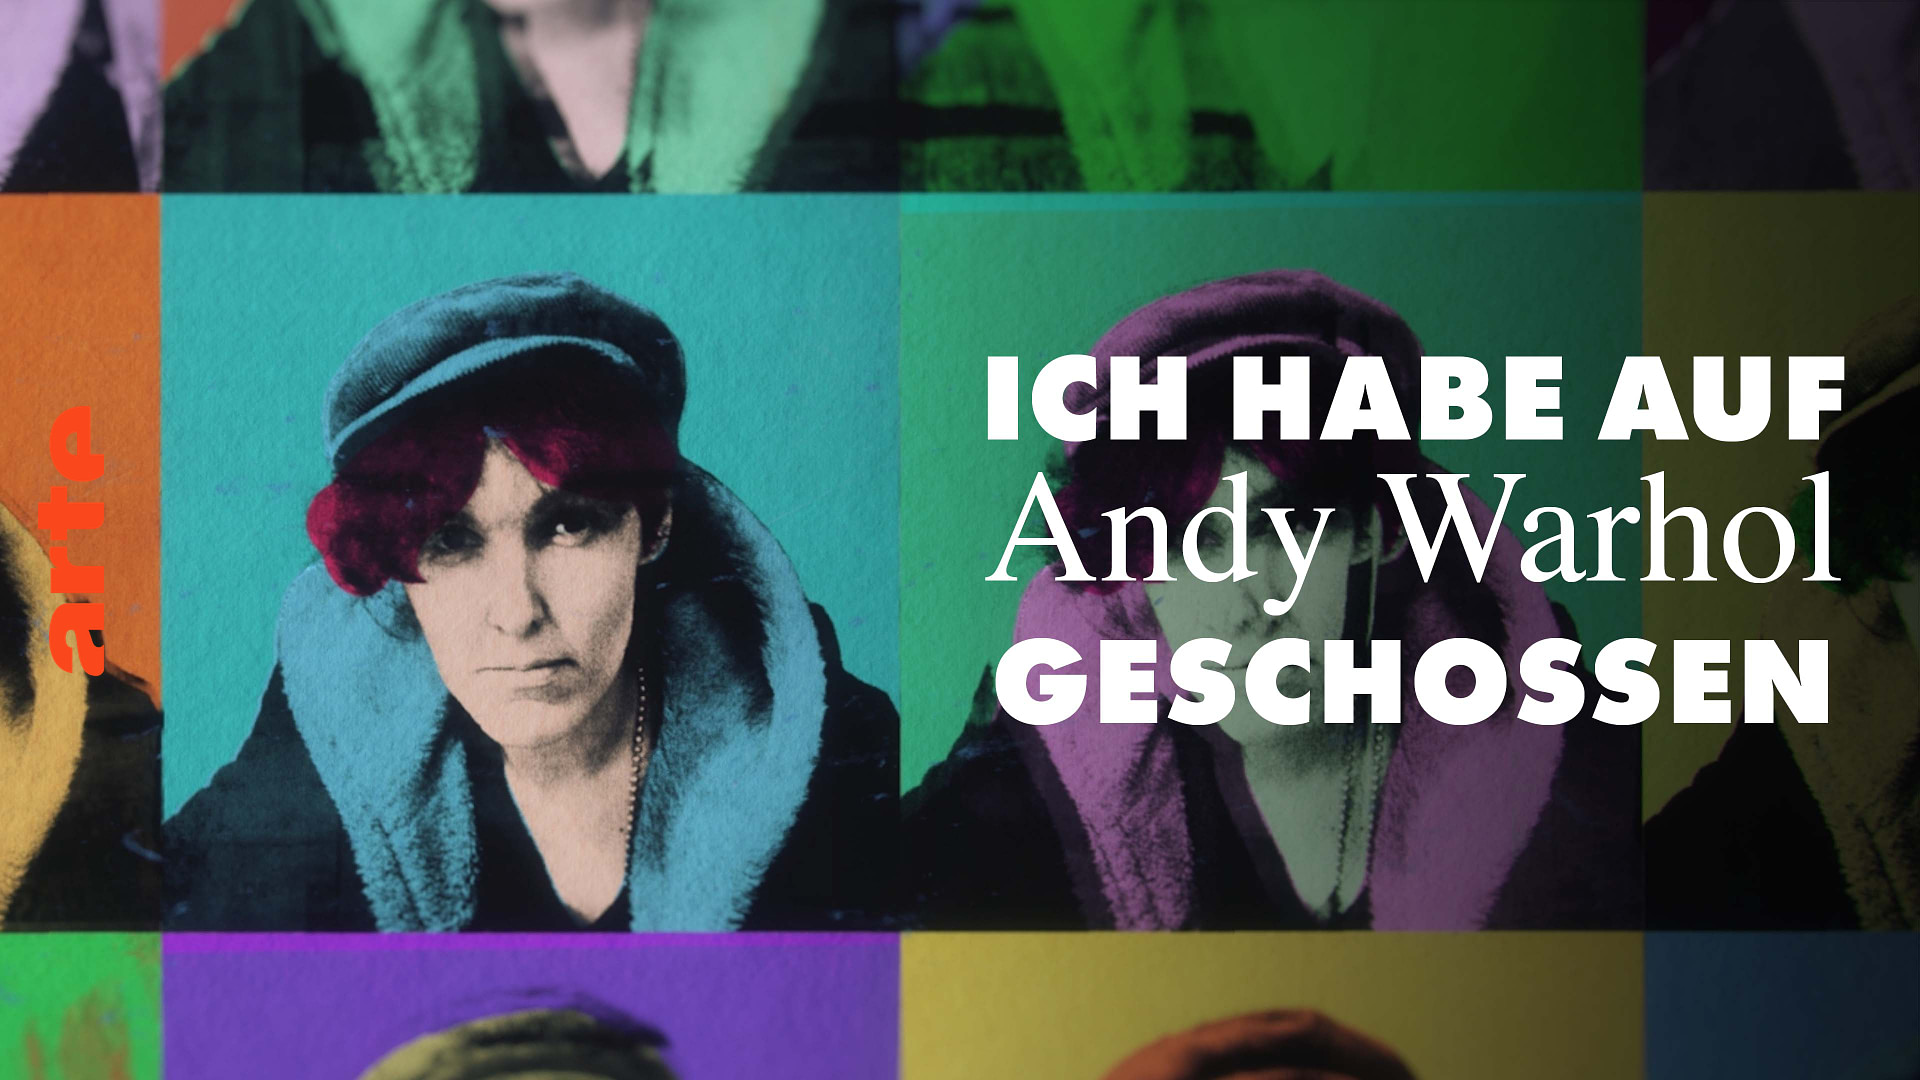 Ich habe auf Andy Warhol geschossen - Scum Manifesto